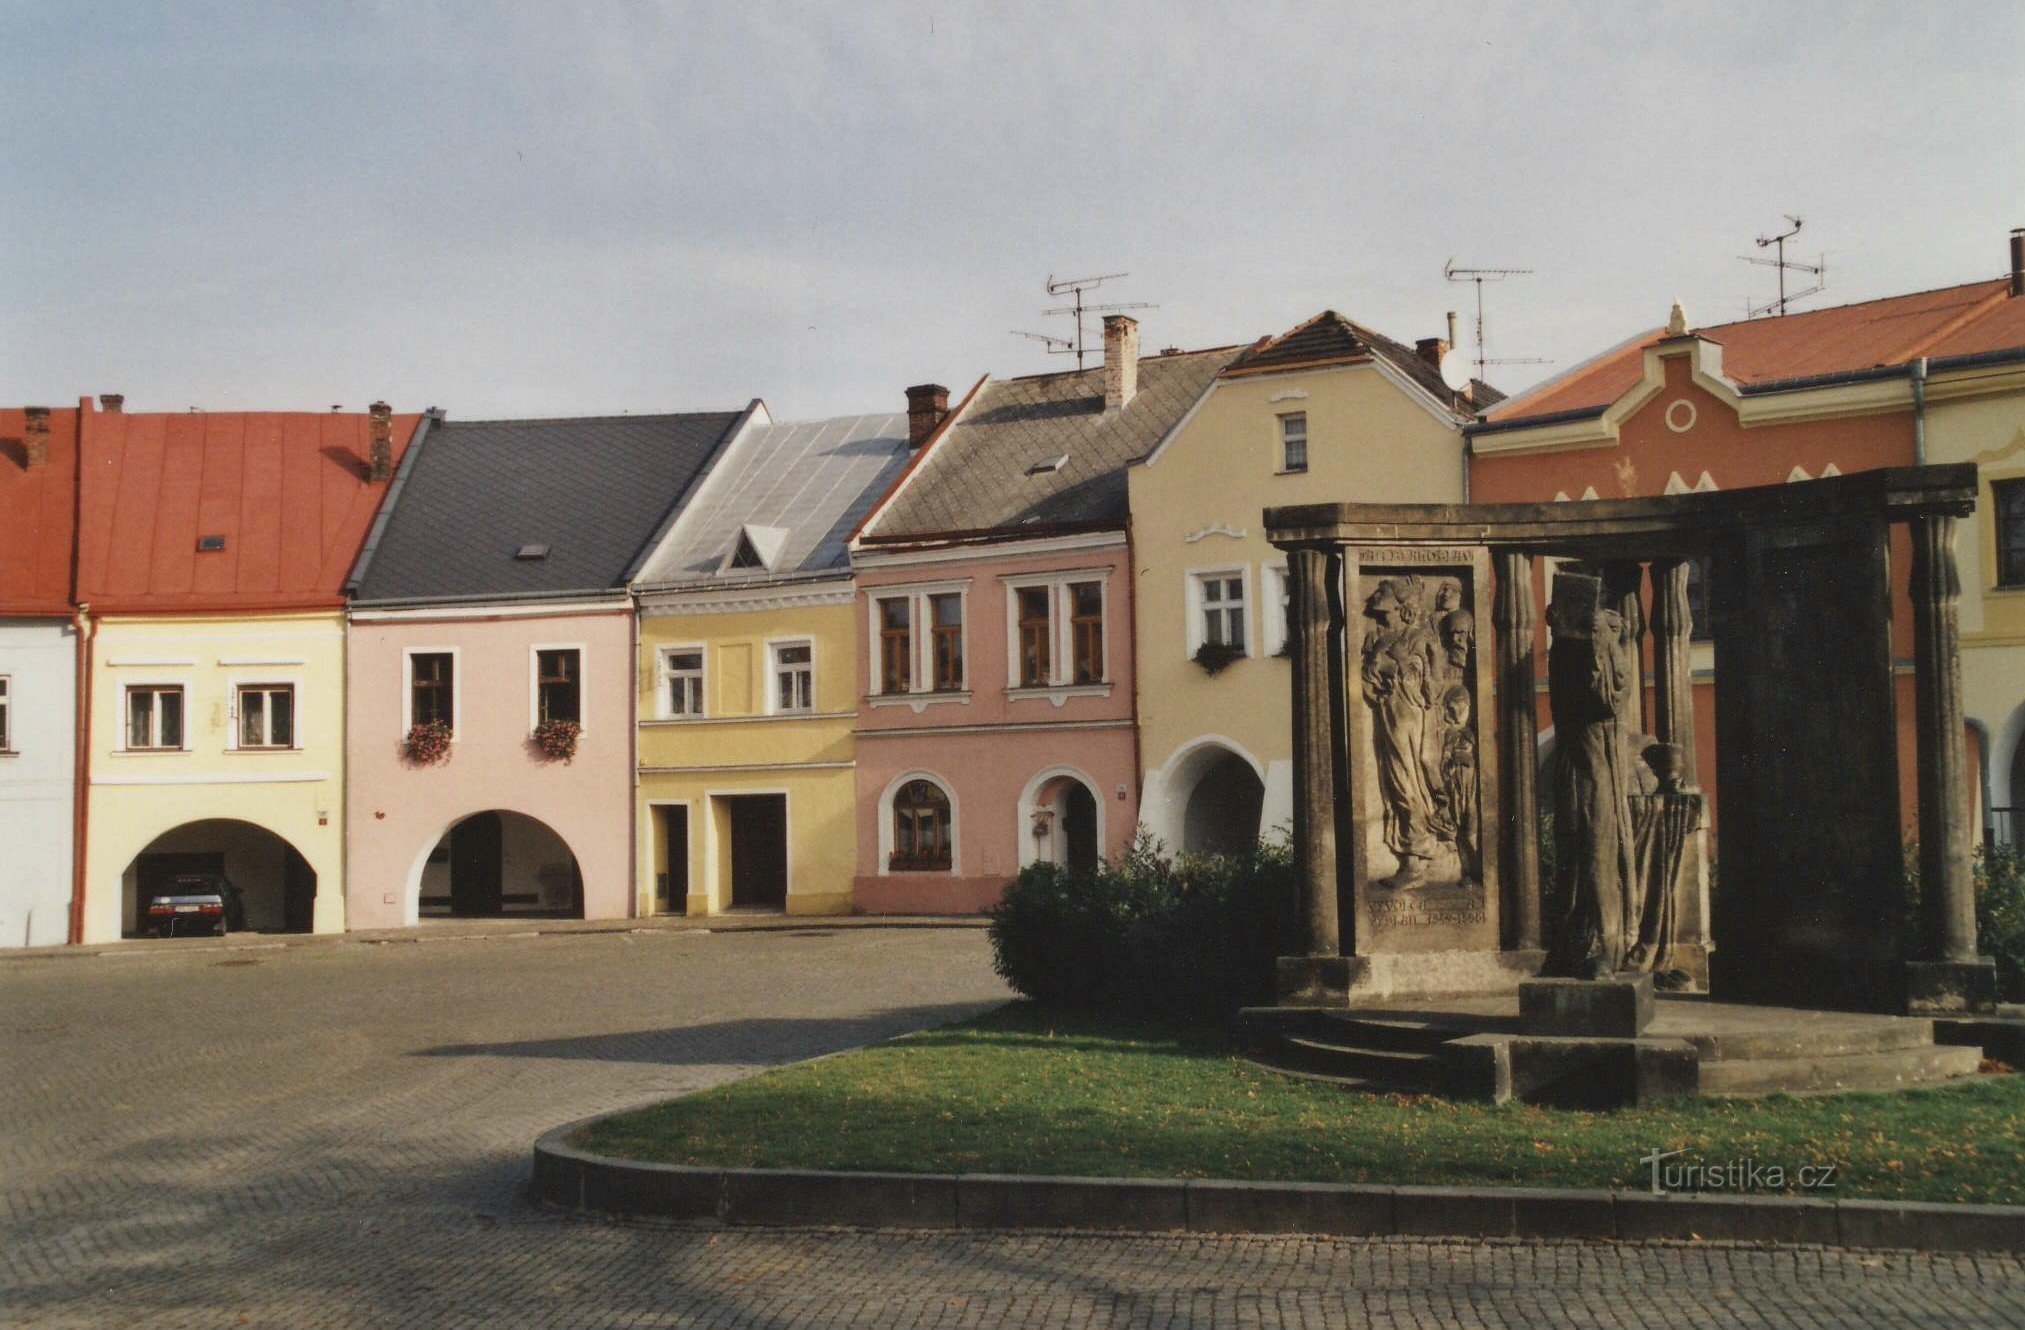 Oberer Platz und das Denkmal für Jan Blahoslav mit der Kralicka-Bibel